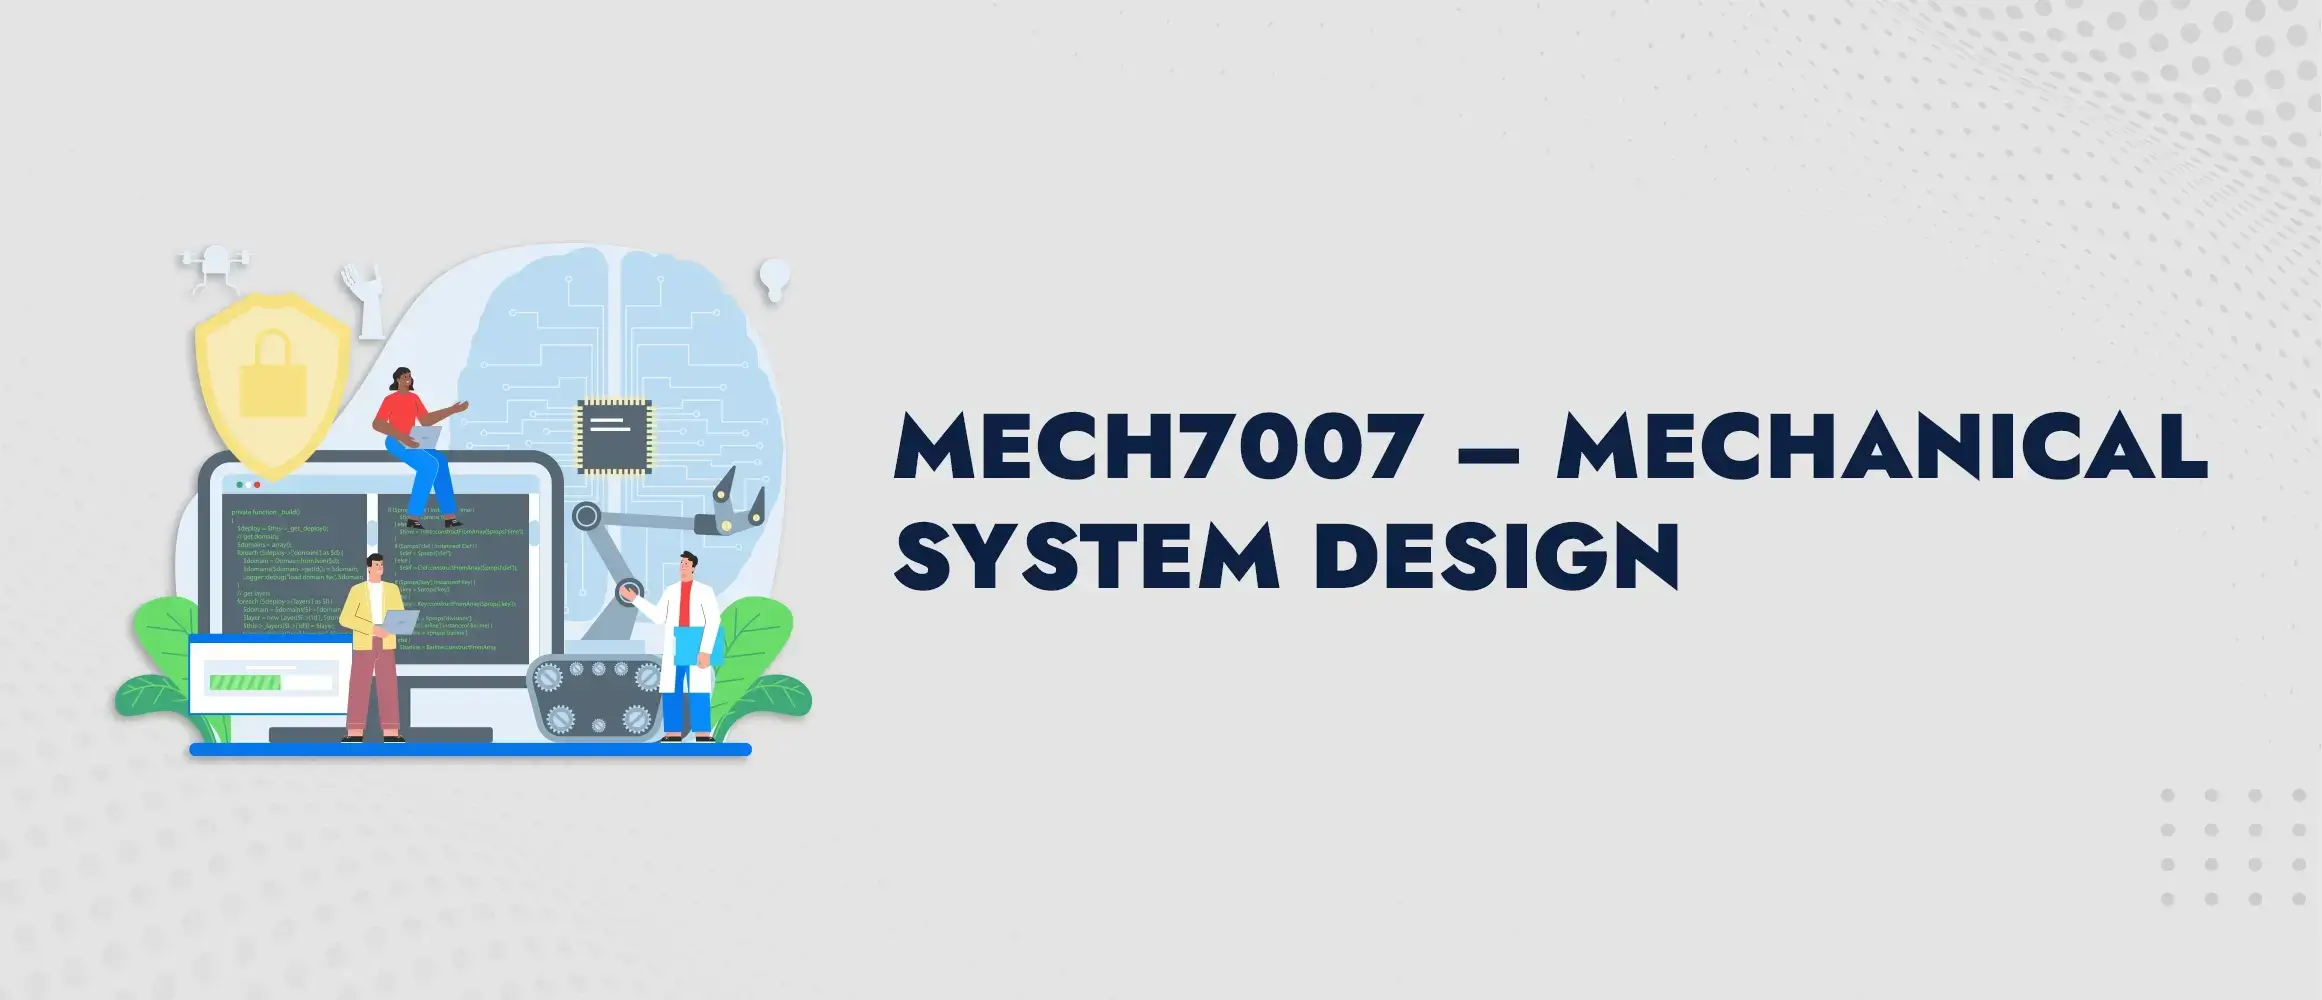 MECH7007 Mechanical System Design